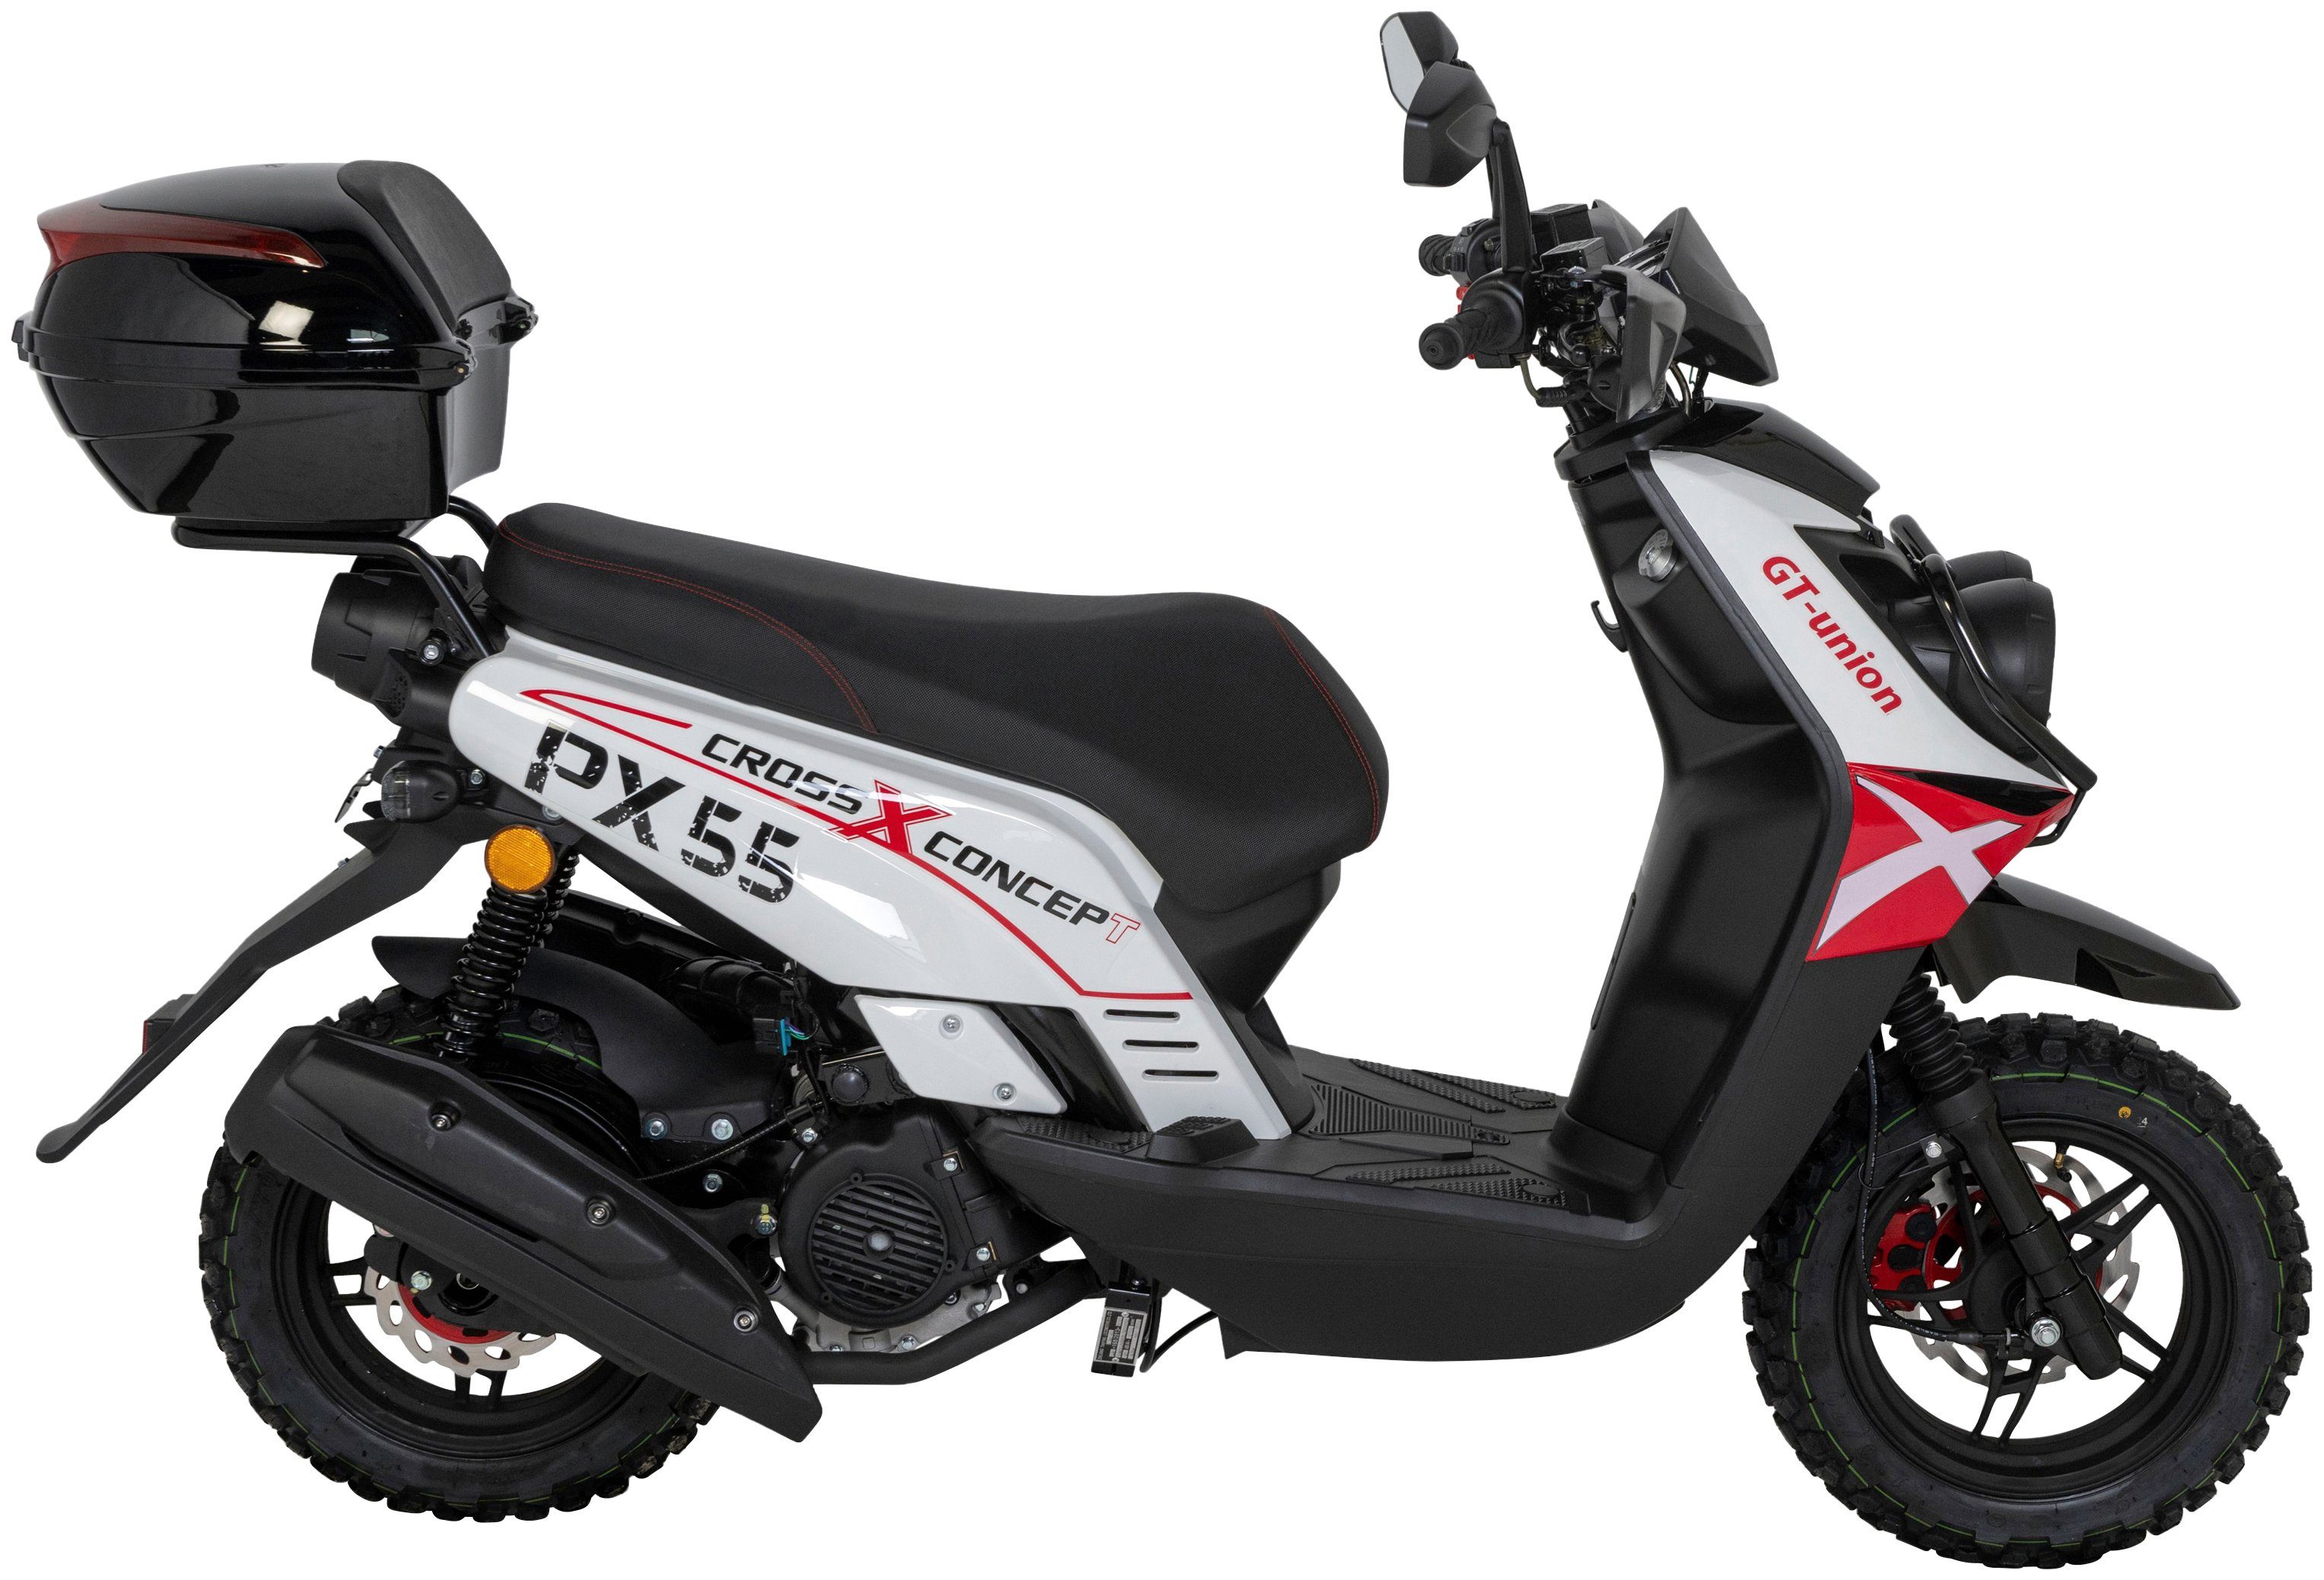 GT UNION PX mit Cross-Concept, km/h, 85 Euro Topcase weiß/rot/schwarz 55 5, ccm, (Set), Motorroller 125